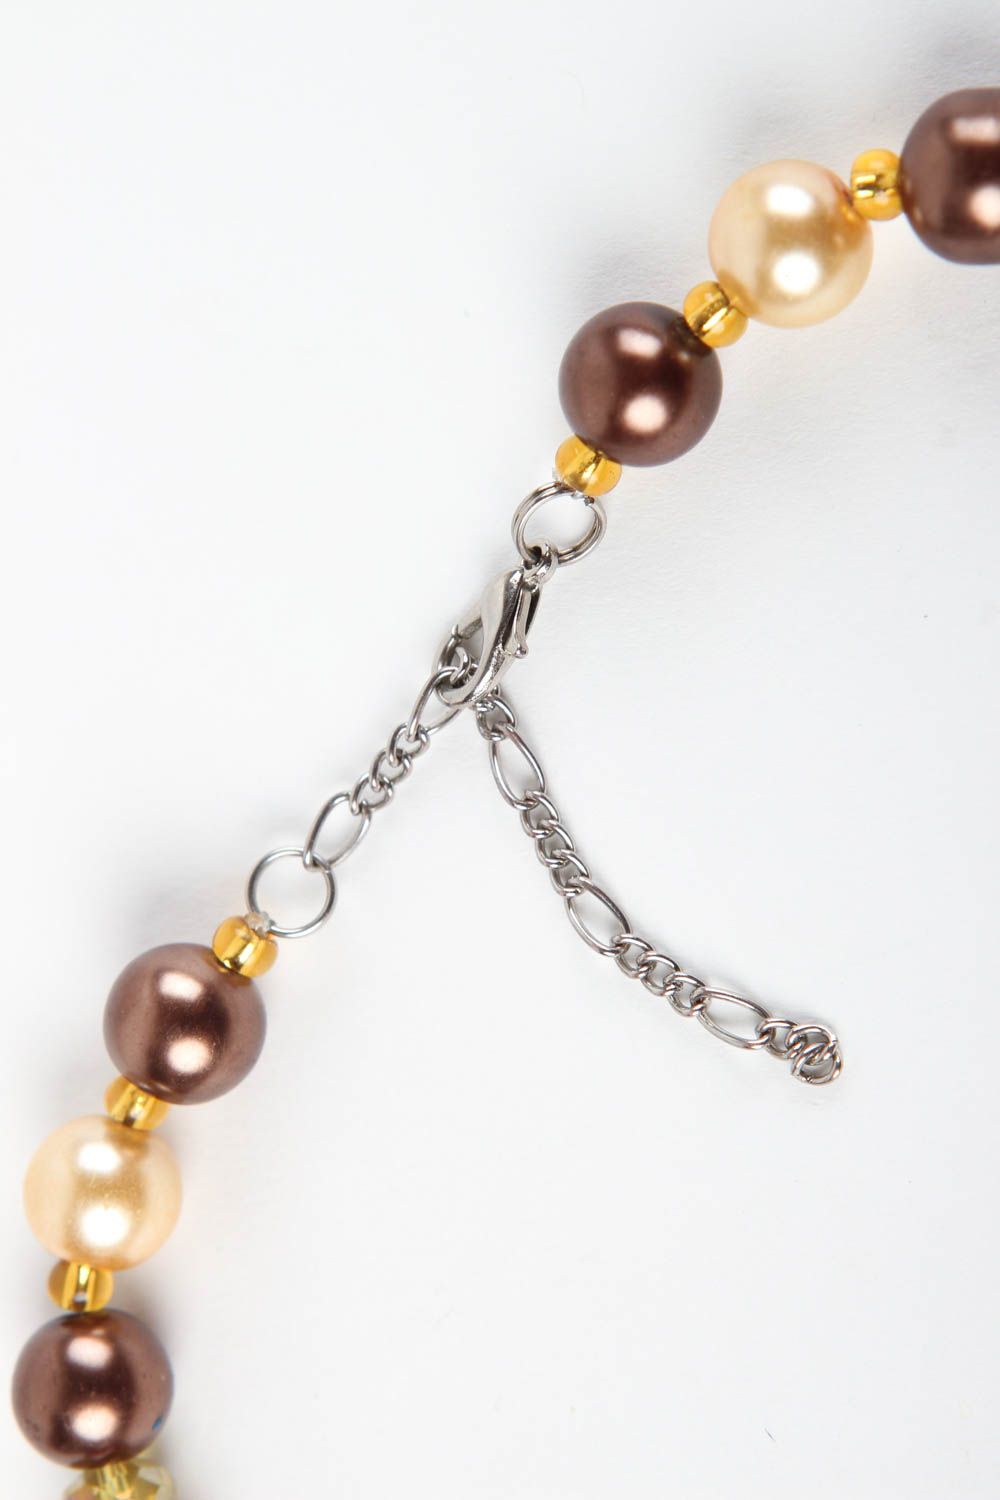 Handmade Kinder Halskette schöner Schmuck Perlen Kette Collier Halskette zart foto 4